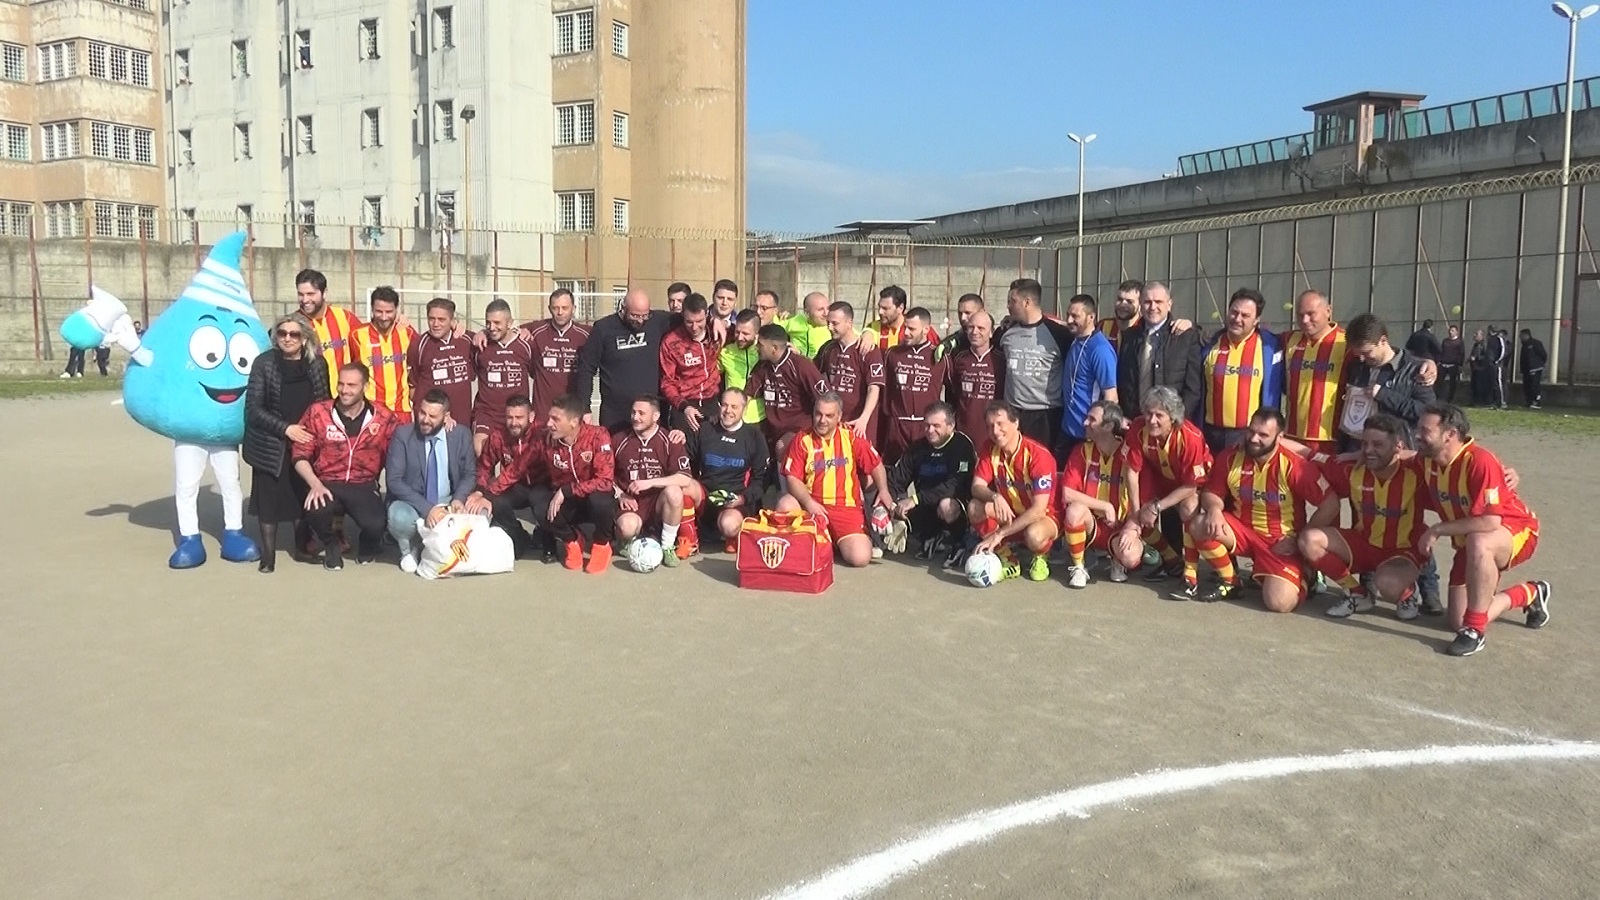 Benevento| Lo Sport ci unisce, Gesesa e detenuti in campo nel giorno dell’Acqua